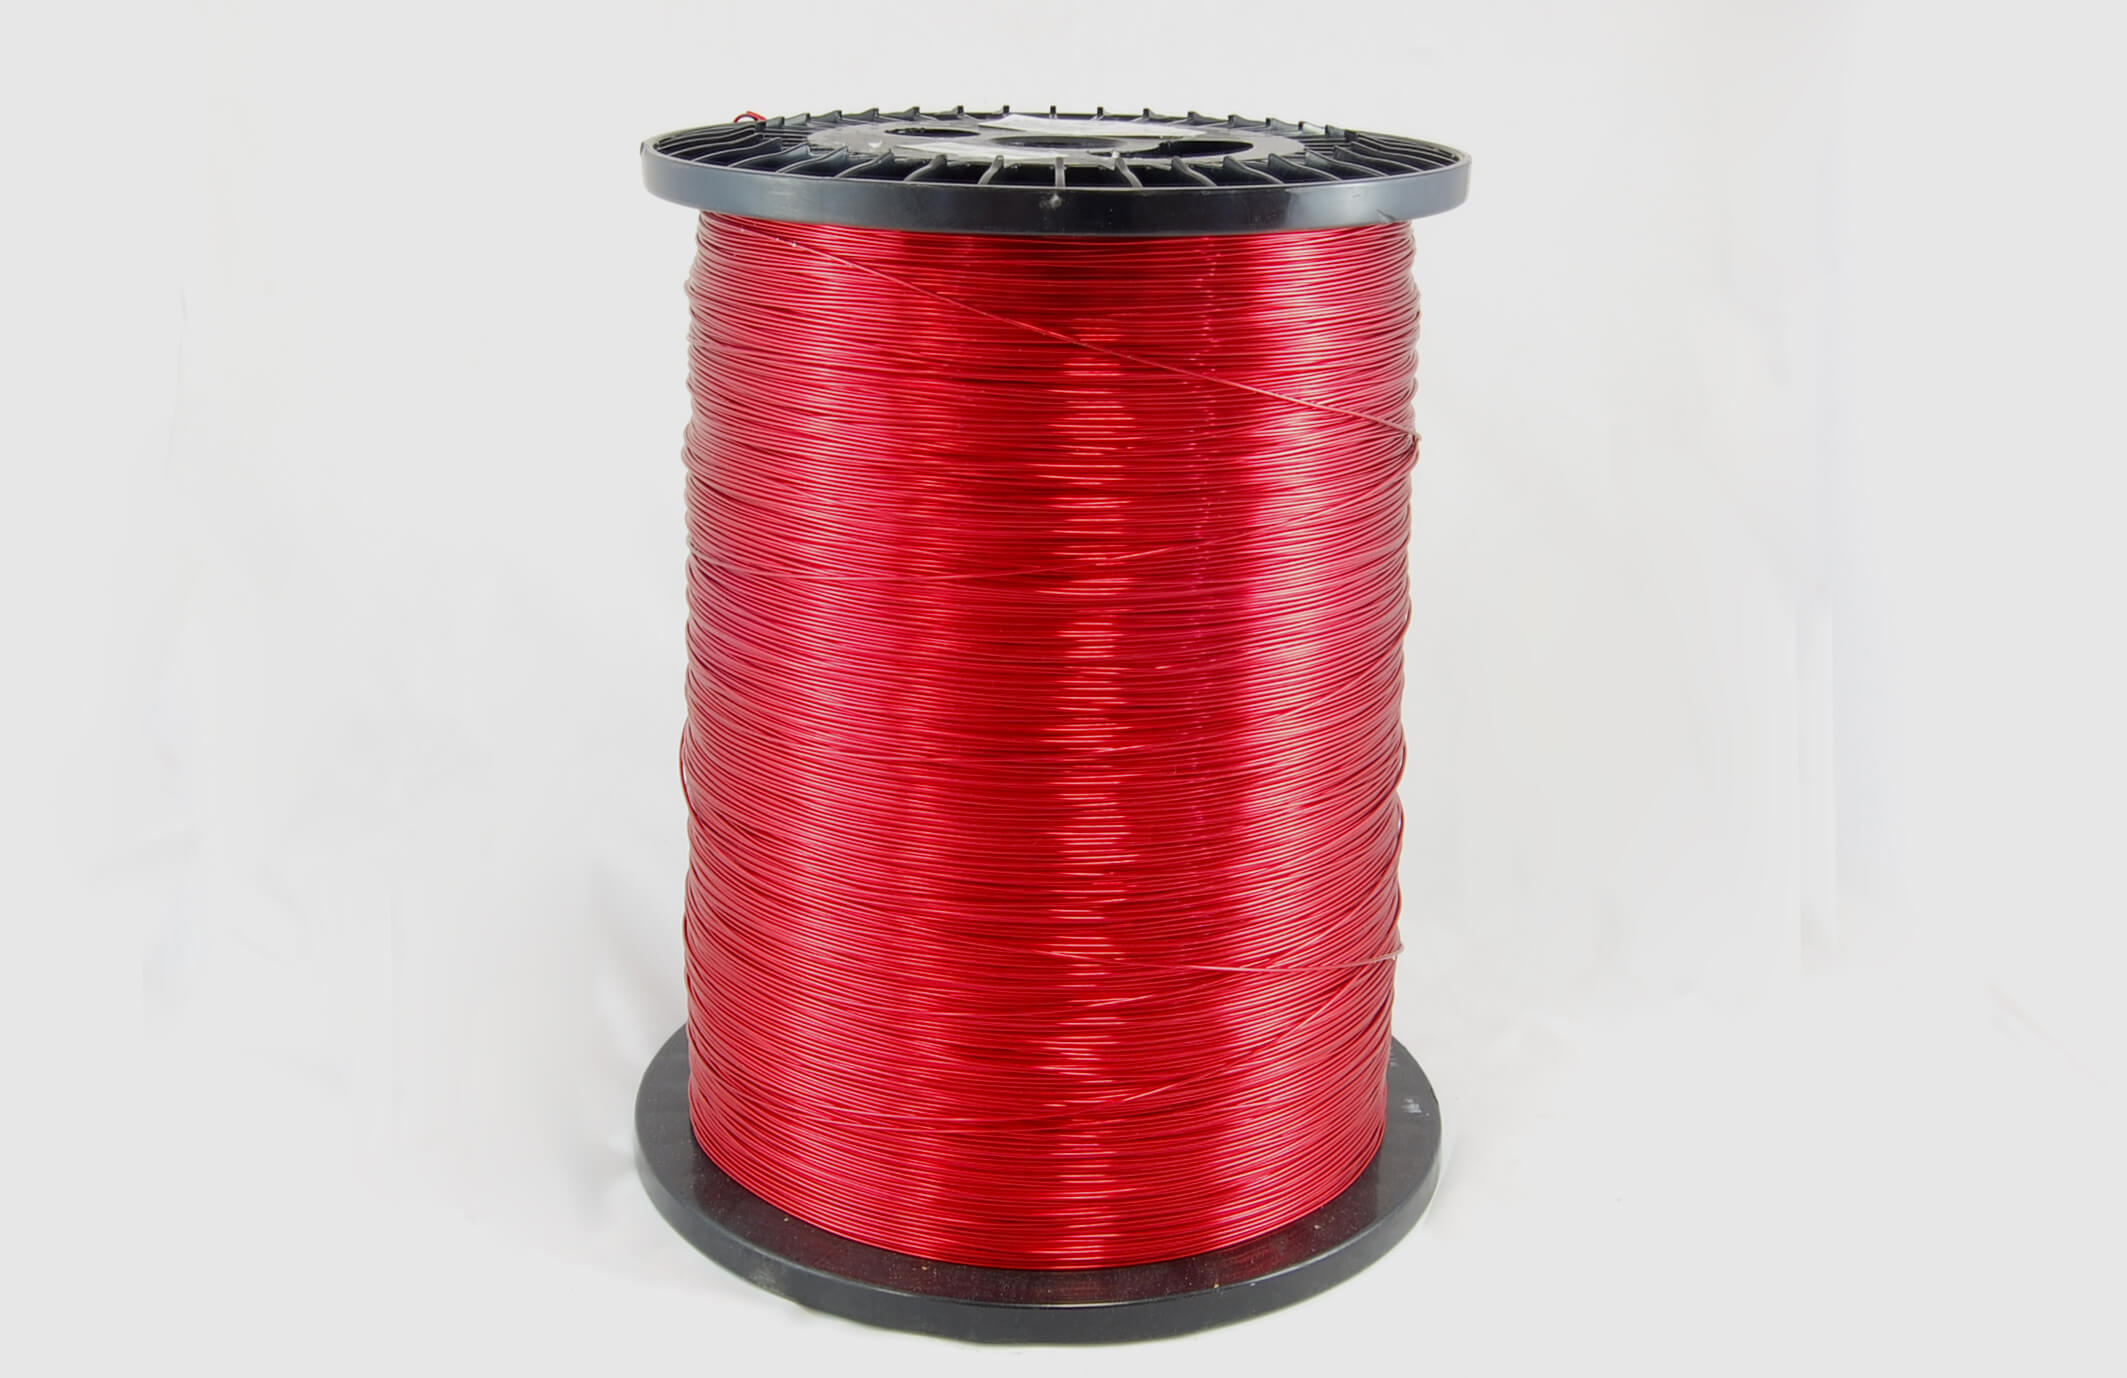 #15 Heavy Nysol  Round HNSR MW 80 Copper Magnet Wire 155°C, red, 85 LB box (average wght.)